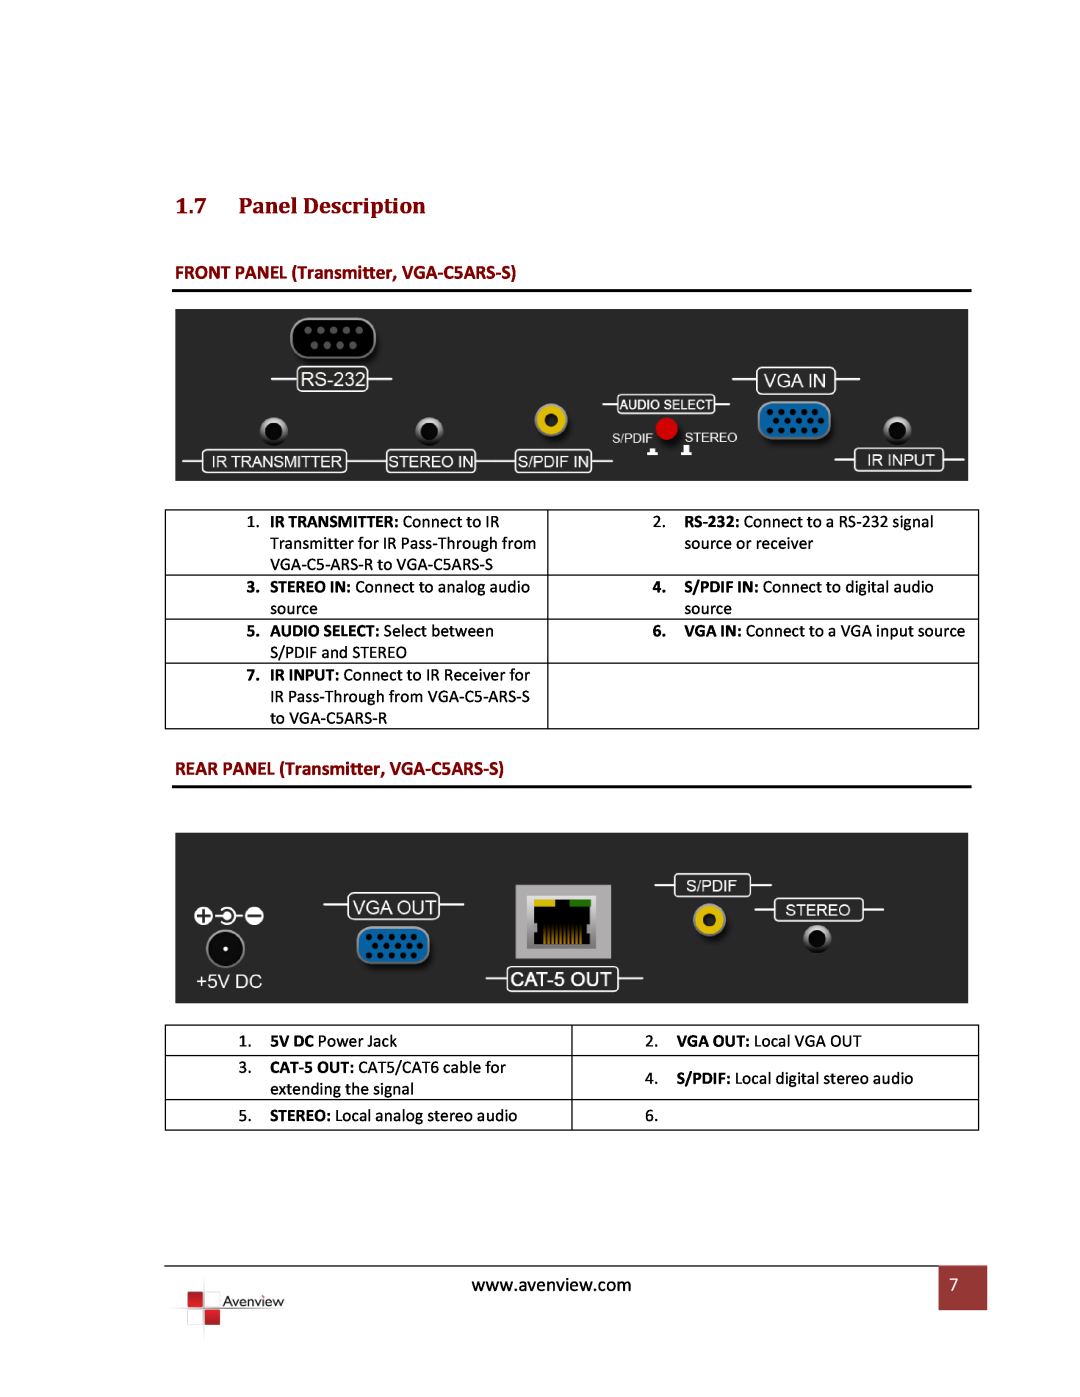 Avenview VR 2000 1.7Panel Description, FRONT PANEL Transmitter, VGA-C5ARS-S, REAR PANEL Transmitter, VGA-C5ARS-S 